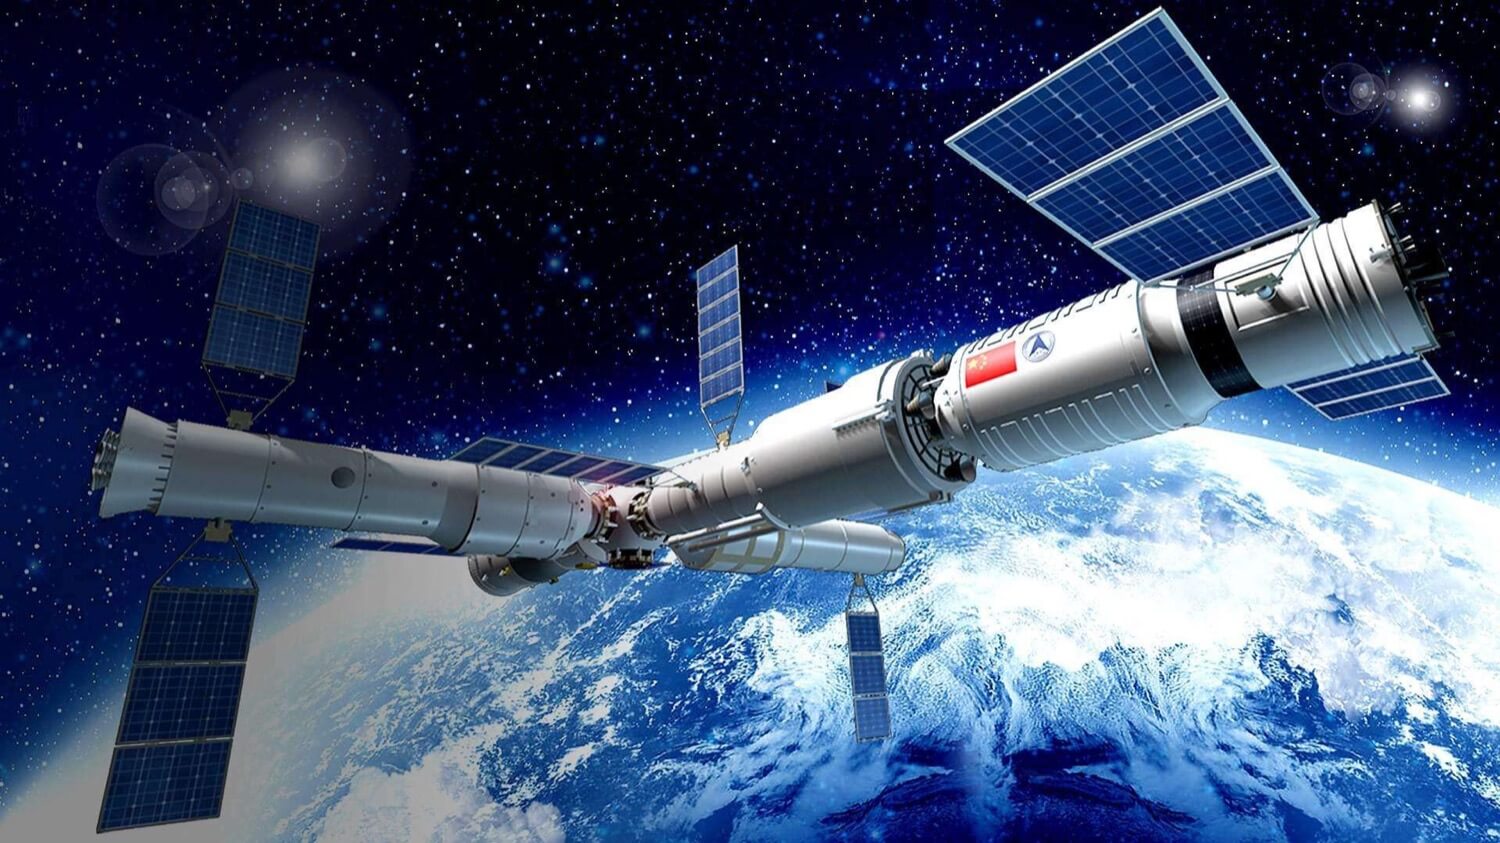 Kina er ved at opbygge en ny international space station ved 2022